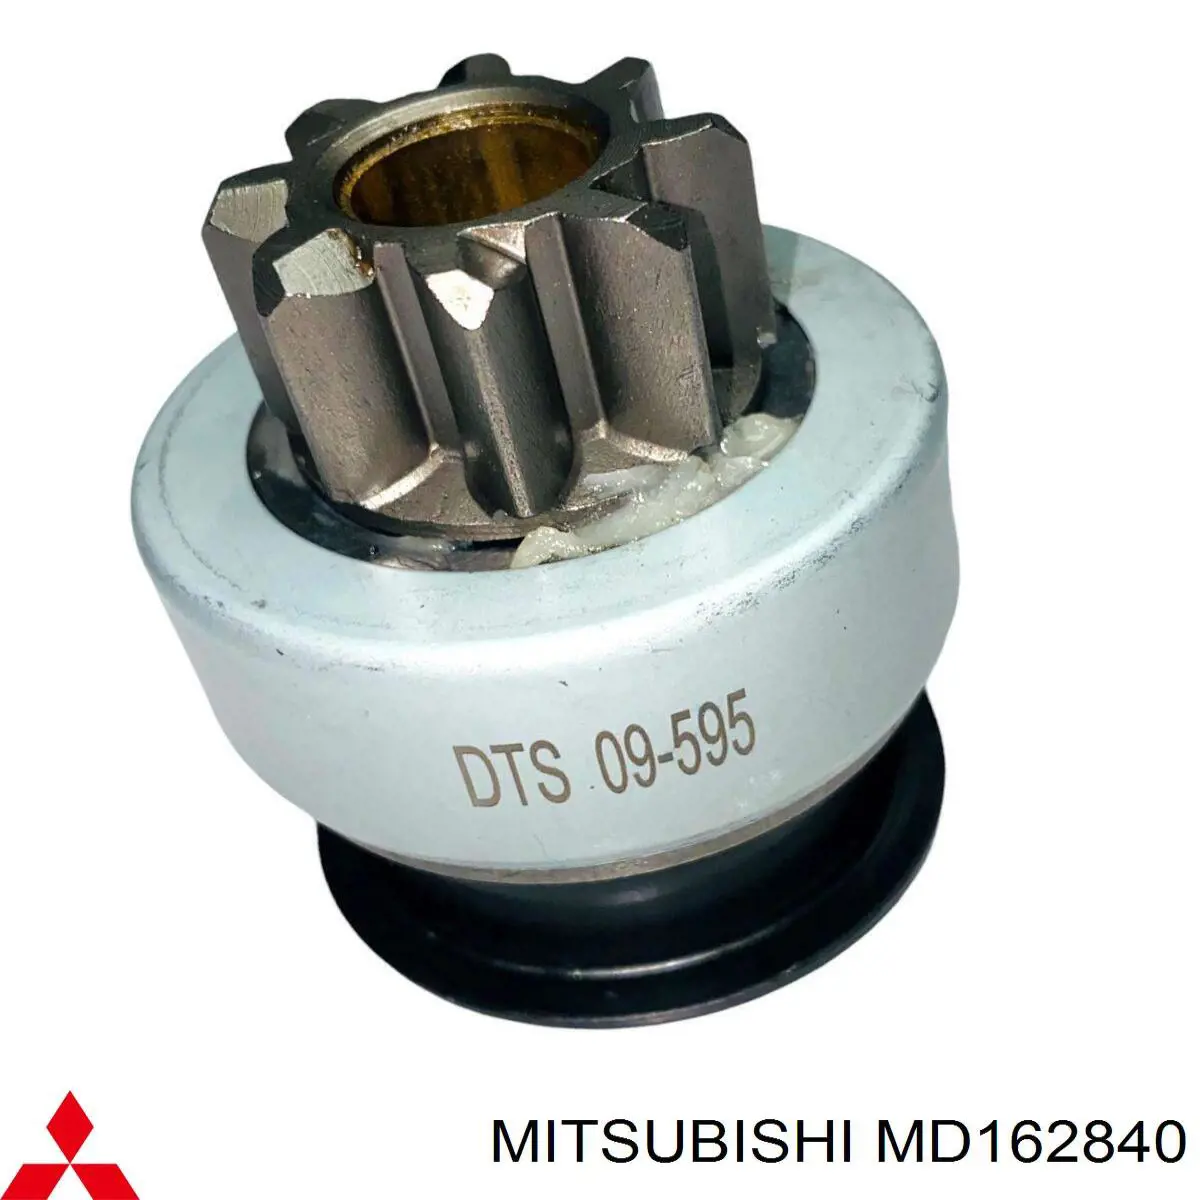 MD162840 Mitsubishi motor de arranque